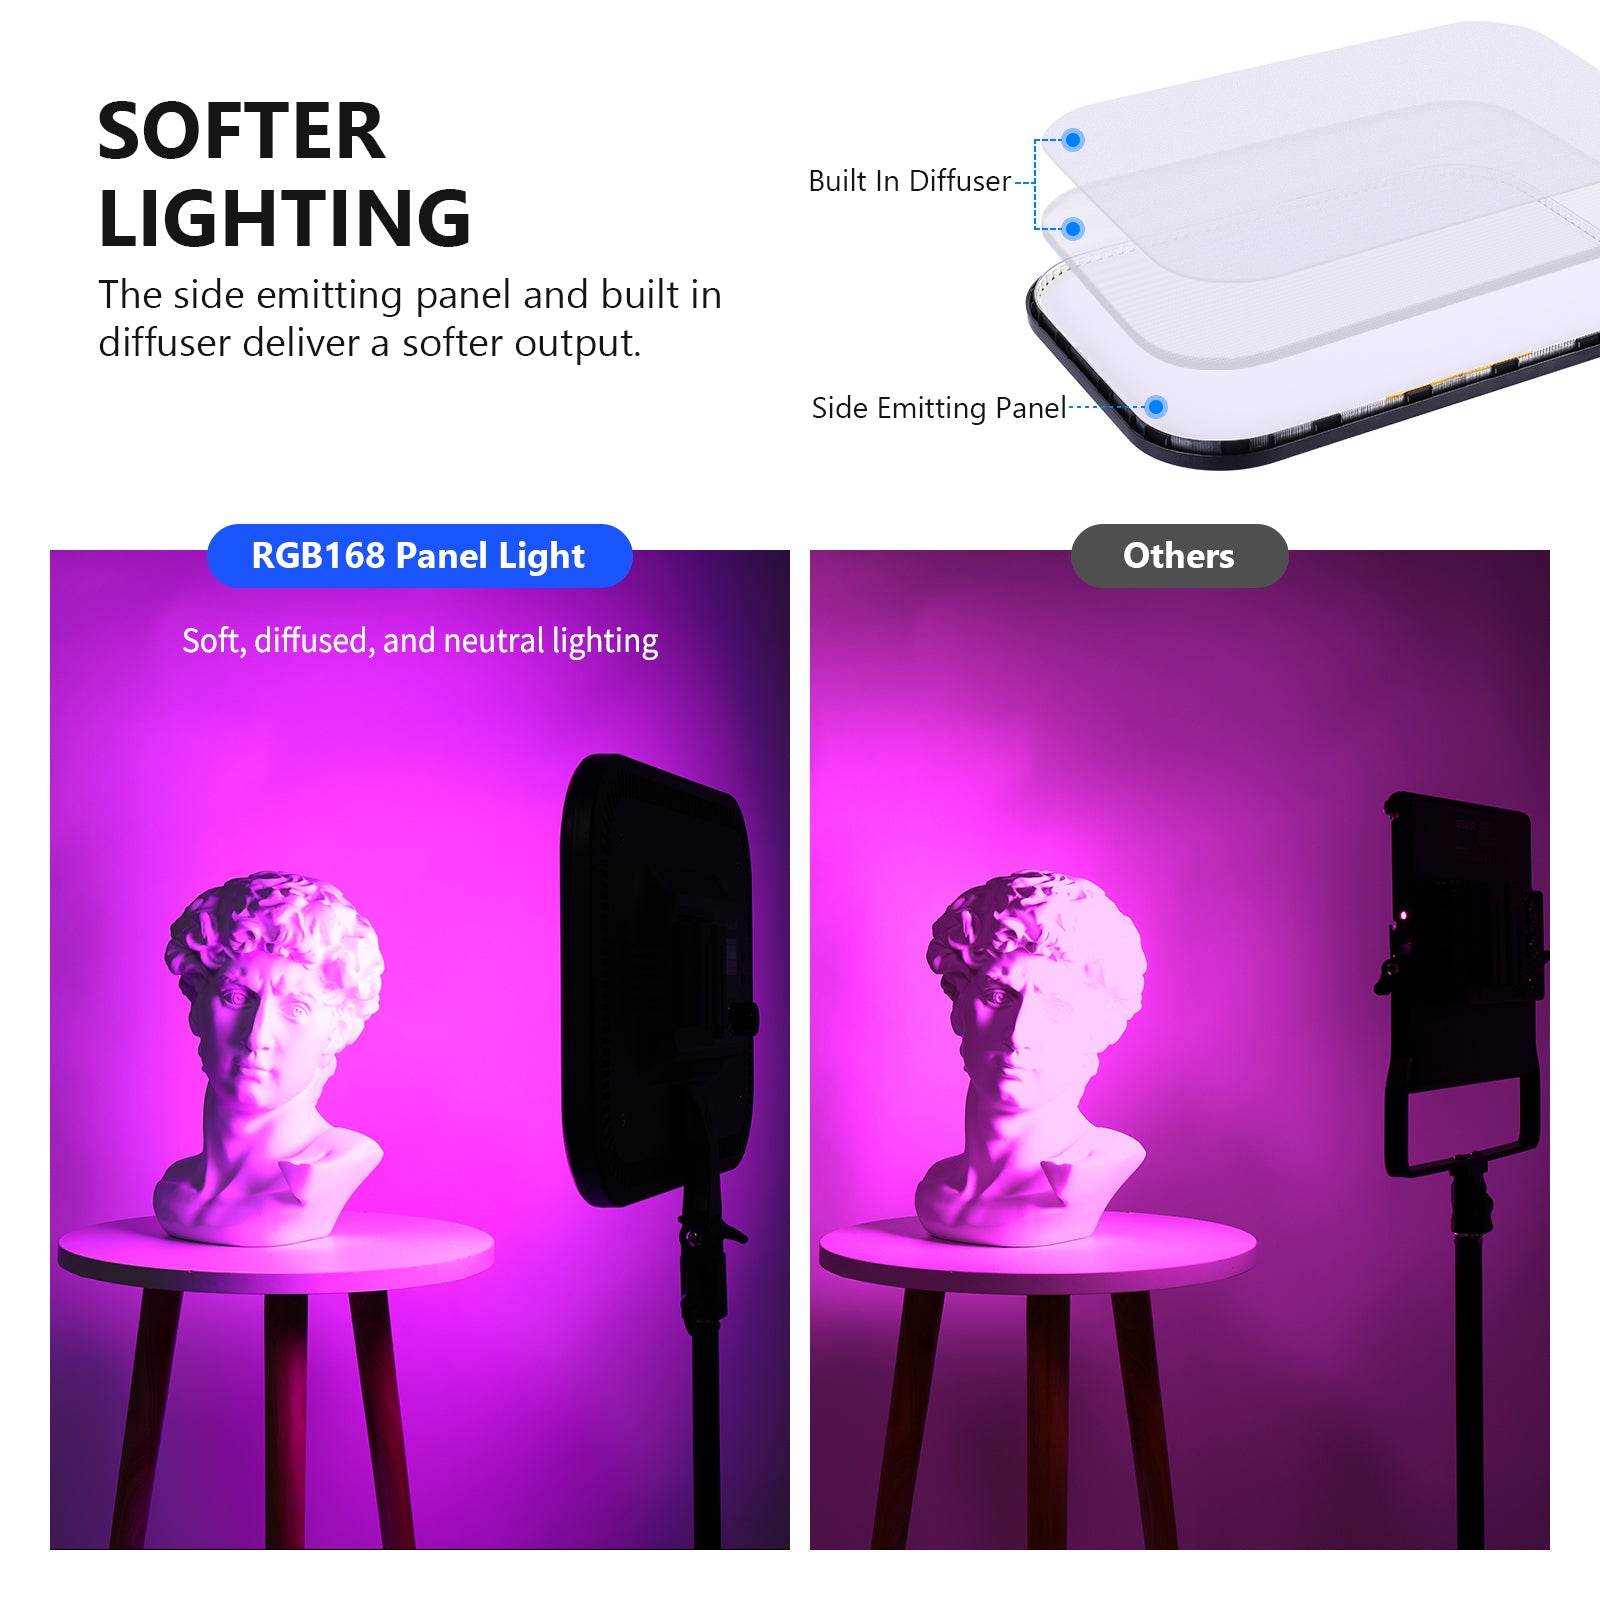 NEEWER 2 Packs 2.4G LED Panel Video Light Soft Lighting Kit, 12.9 Key  Light with Stand/Remote/3200-5600K/CRI97+/Built in 7.4V 5200mAh Battery for